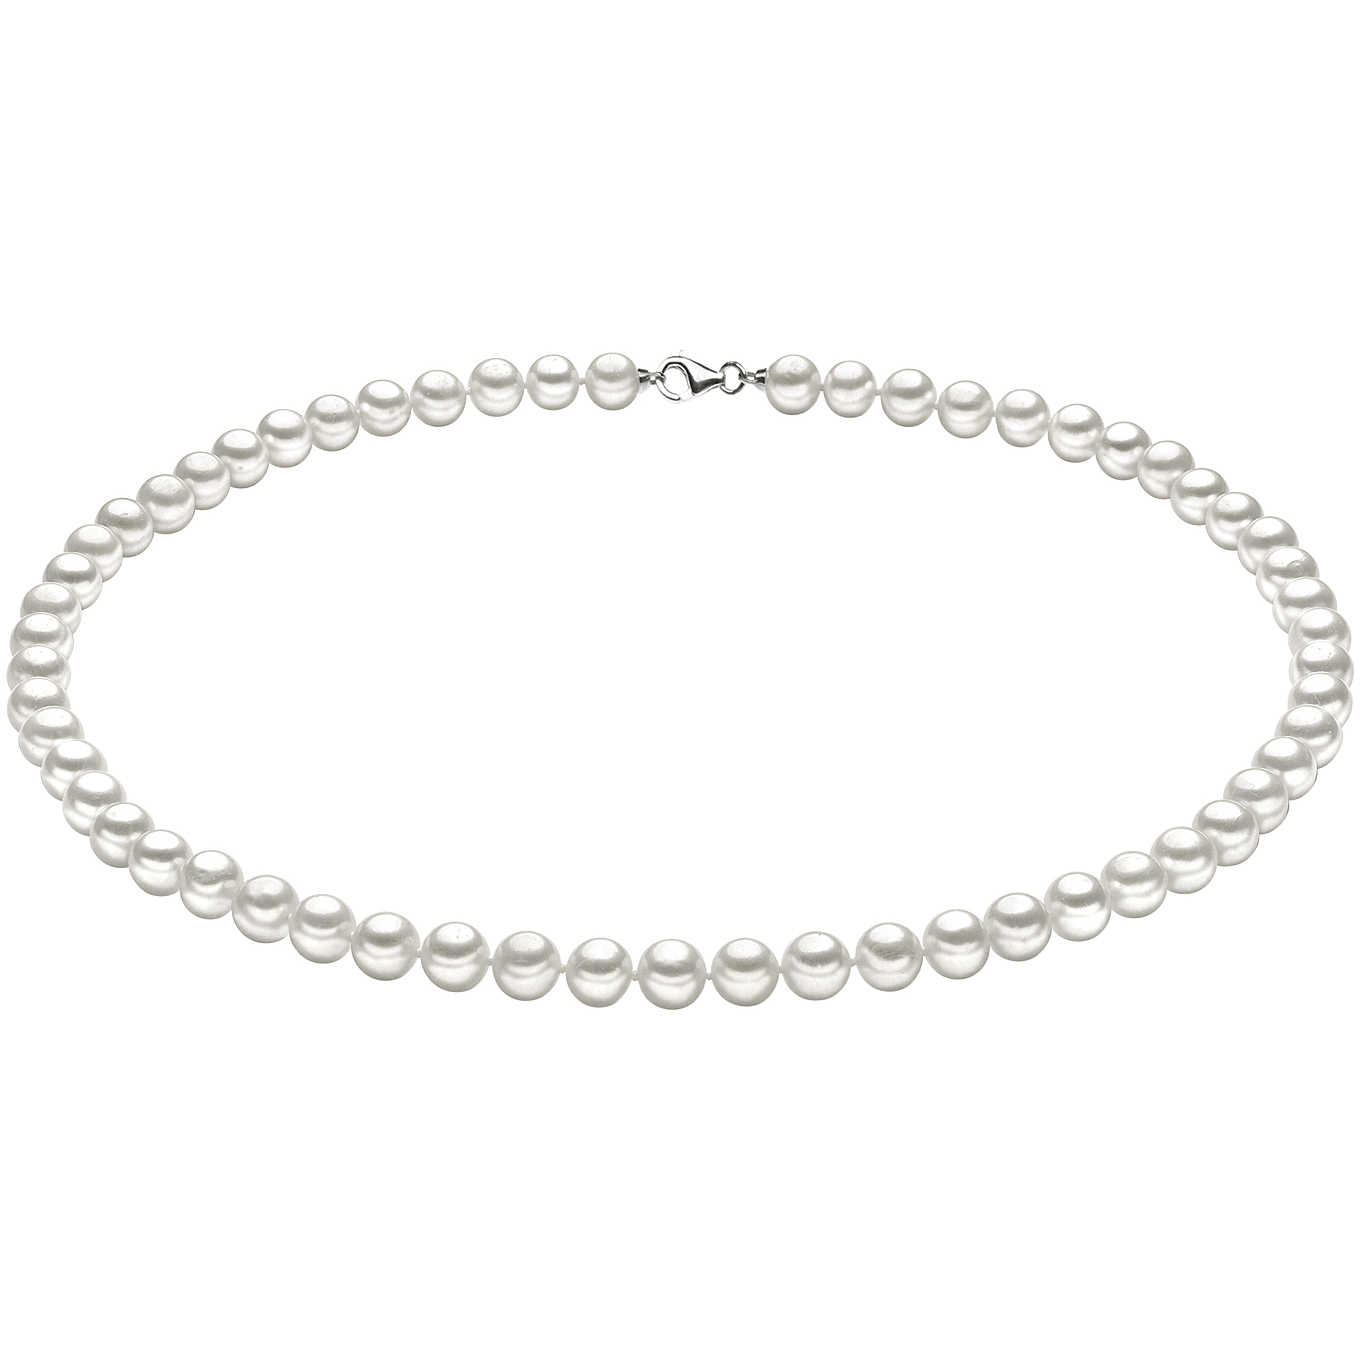 Necklace Woman Comete Gioielli Pearl Silver FWQ 103 S50